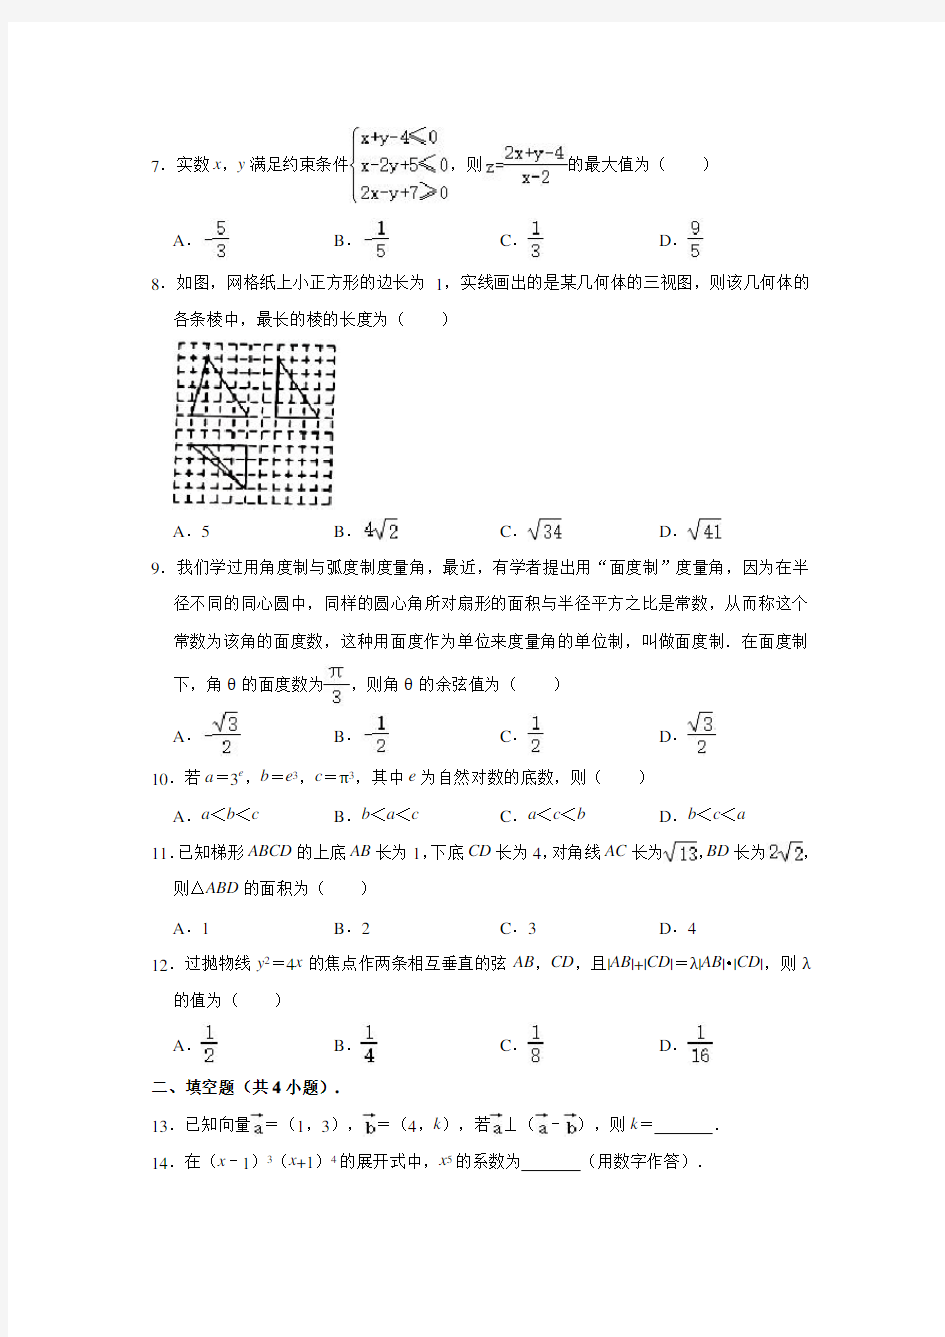 2020-2021学年江西省赣州市高三(上)期末数学(理科)试卷 (解析版)